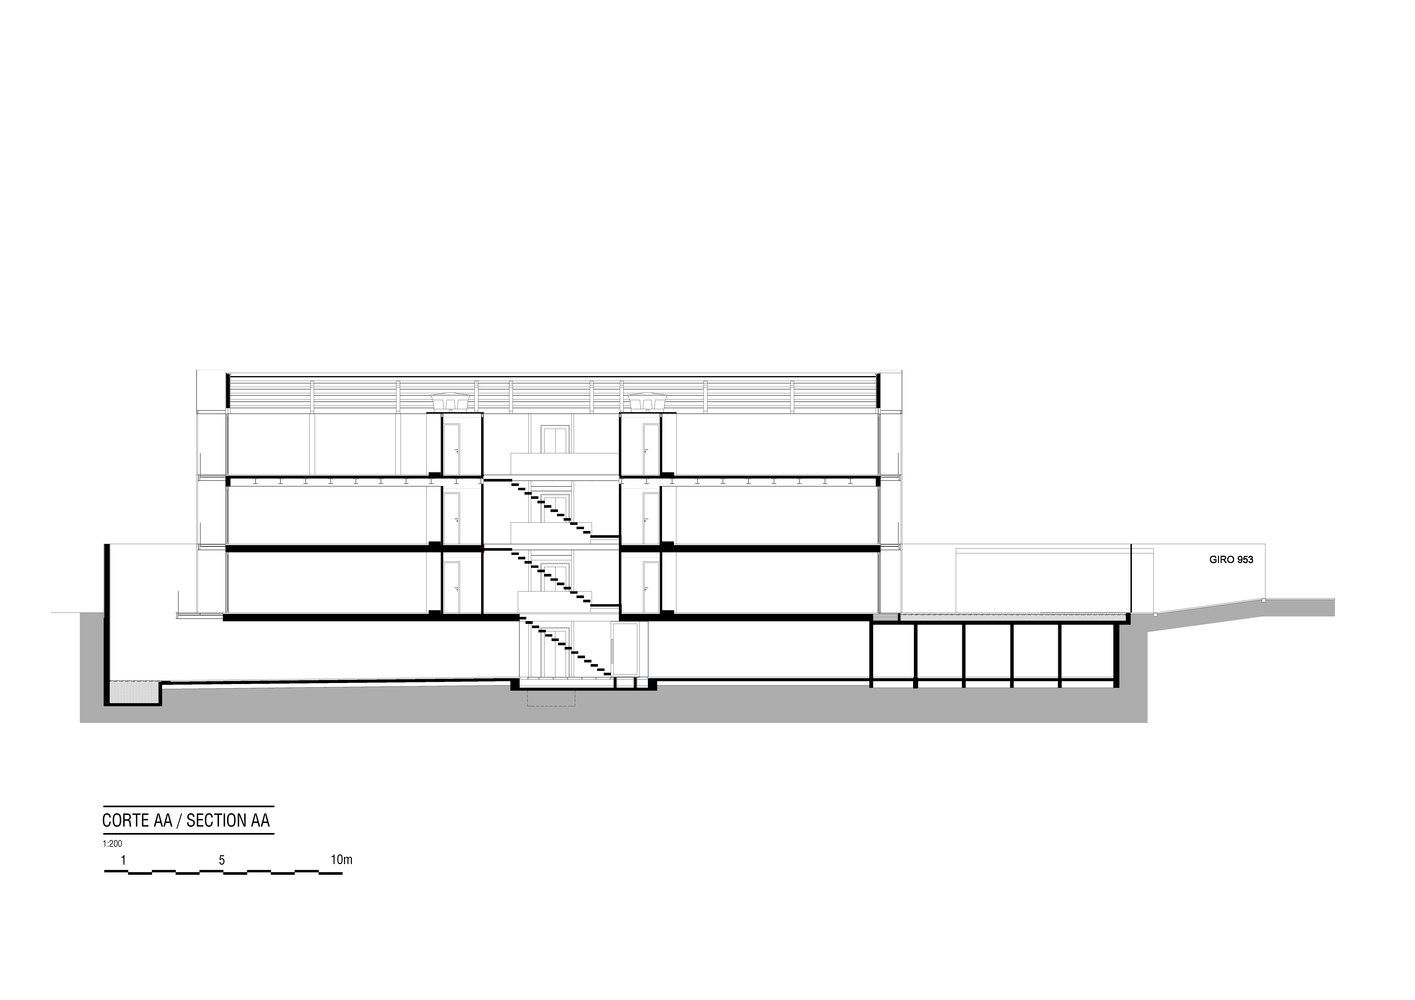 巴西圣保罗Girassol商业大楼设计|Reinach Mendonça Arquitetos Associados - 22